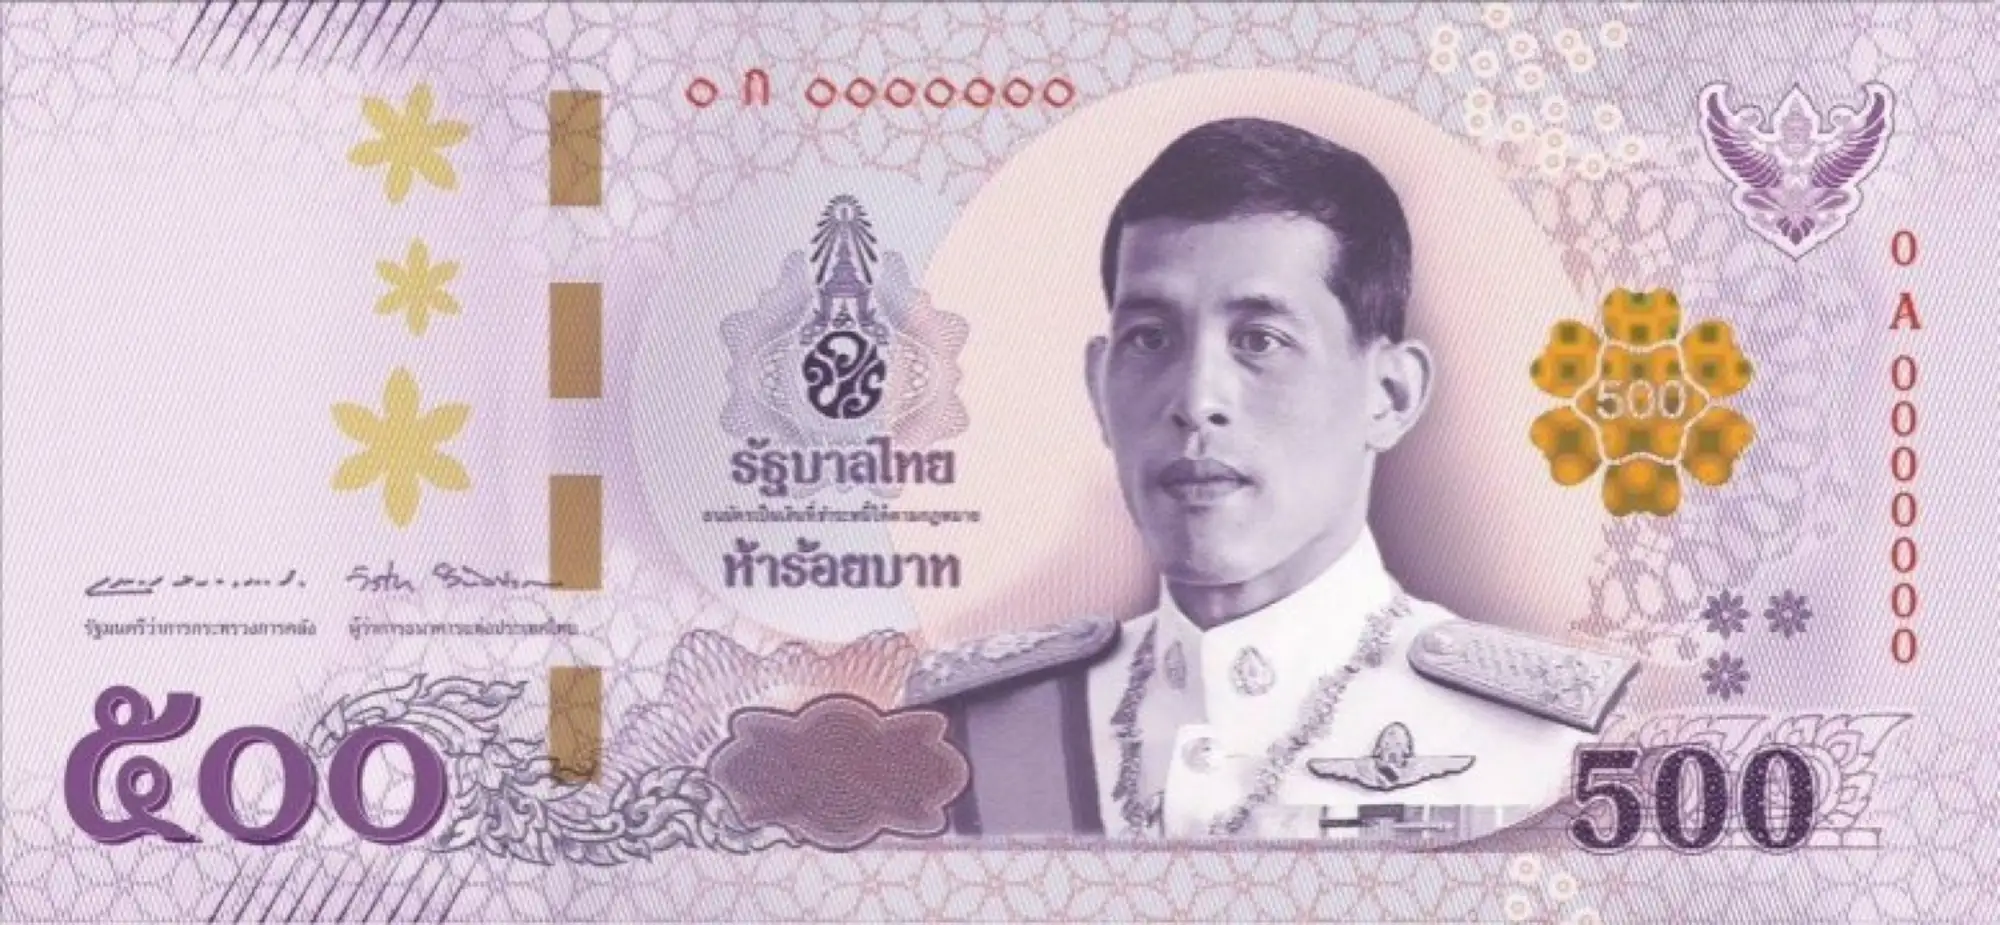 泰铢钞票特写 泰铢是泰国的国家货币 库存照片. 图片 包括有 国王, 概念, 详细资料, 泰铢, 班珠尔 - 177166466